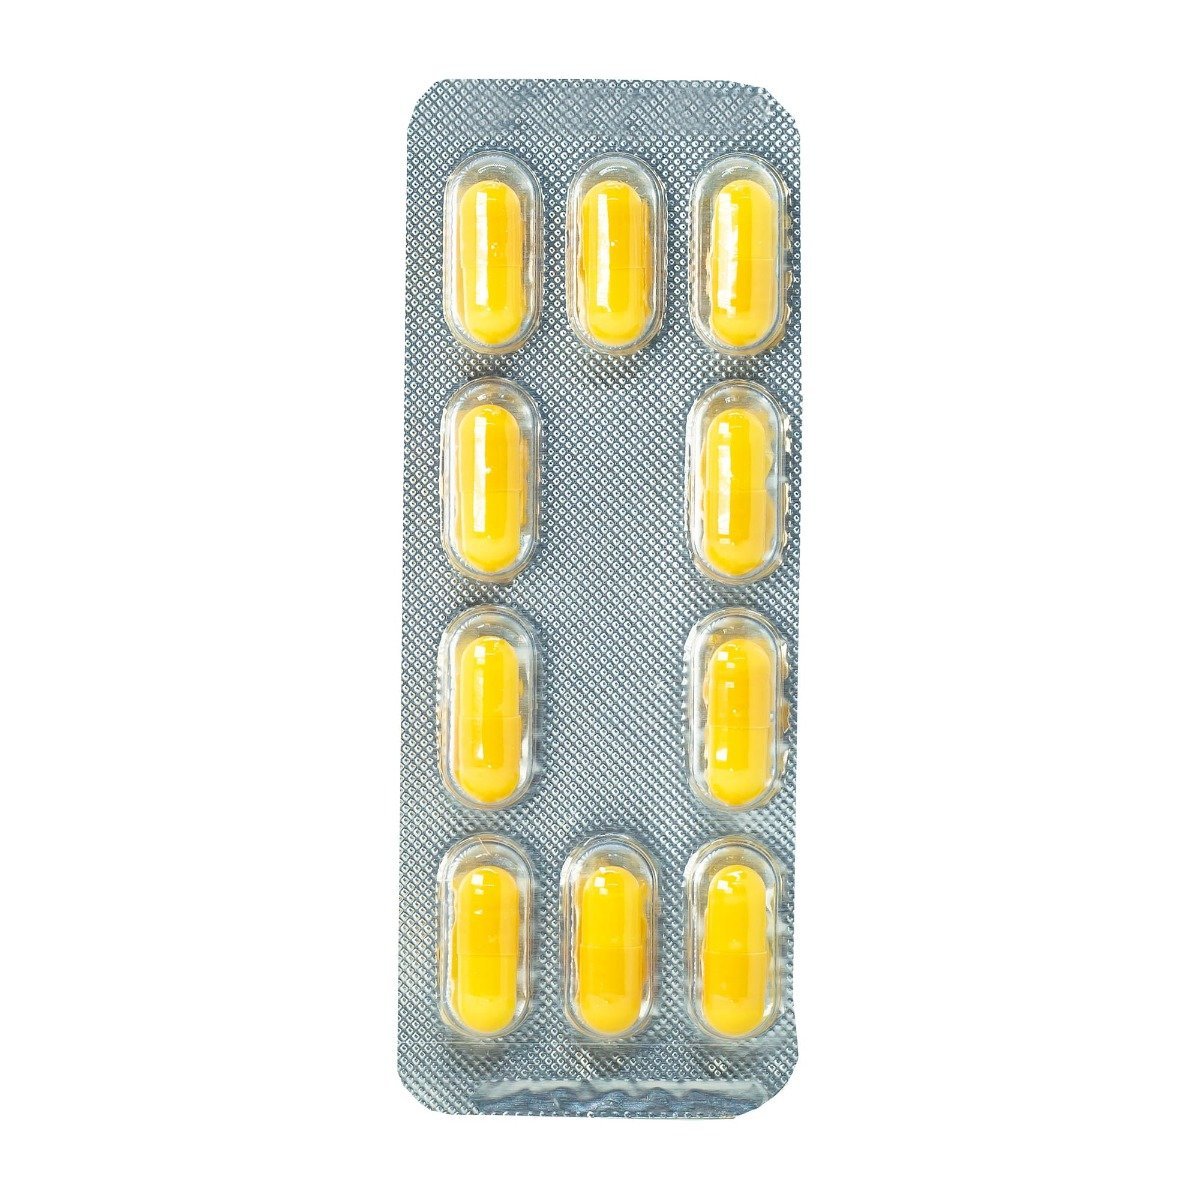 Ketofan 50 mg - 20 Capsules - Bloom Pharmacy